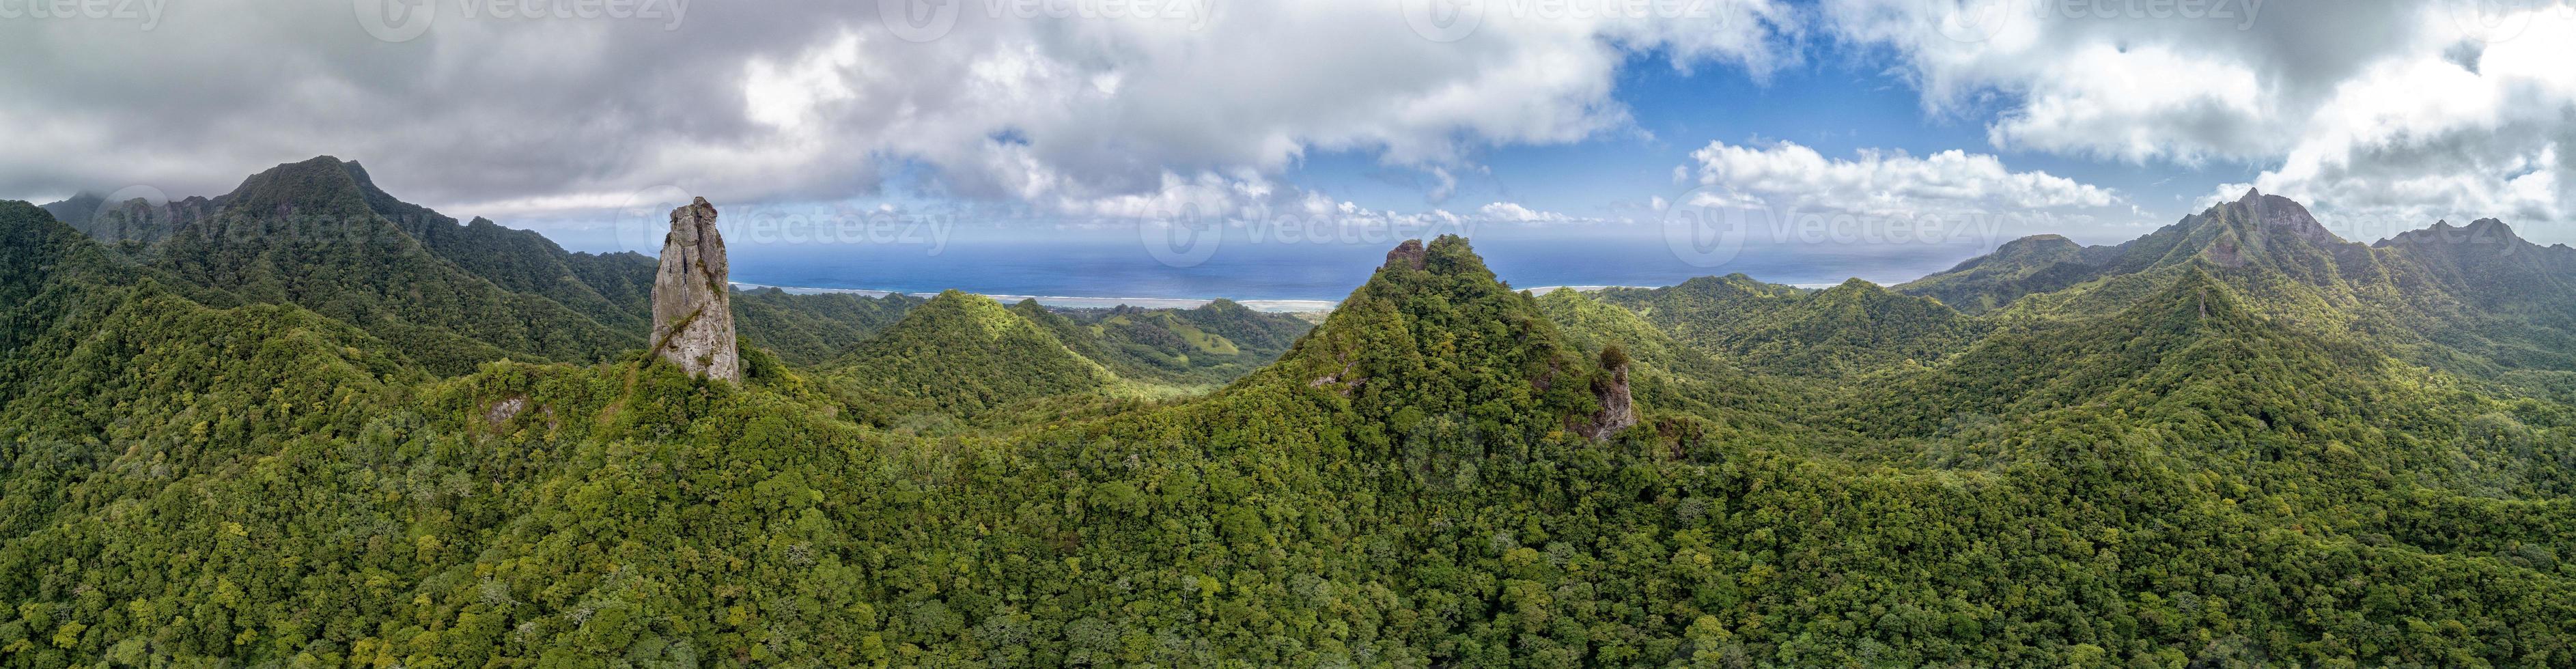 o dedal em rarotonga polinésia cook island montanhas paraíso tropical vista aérea foto